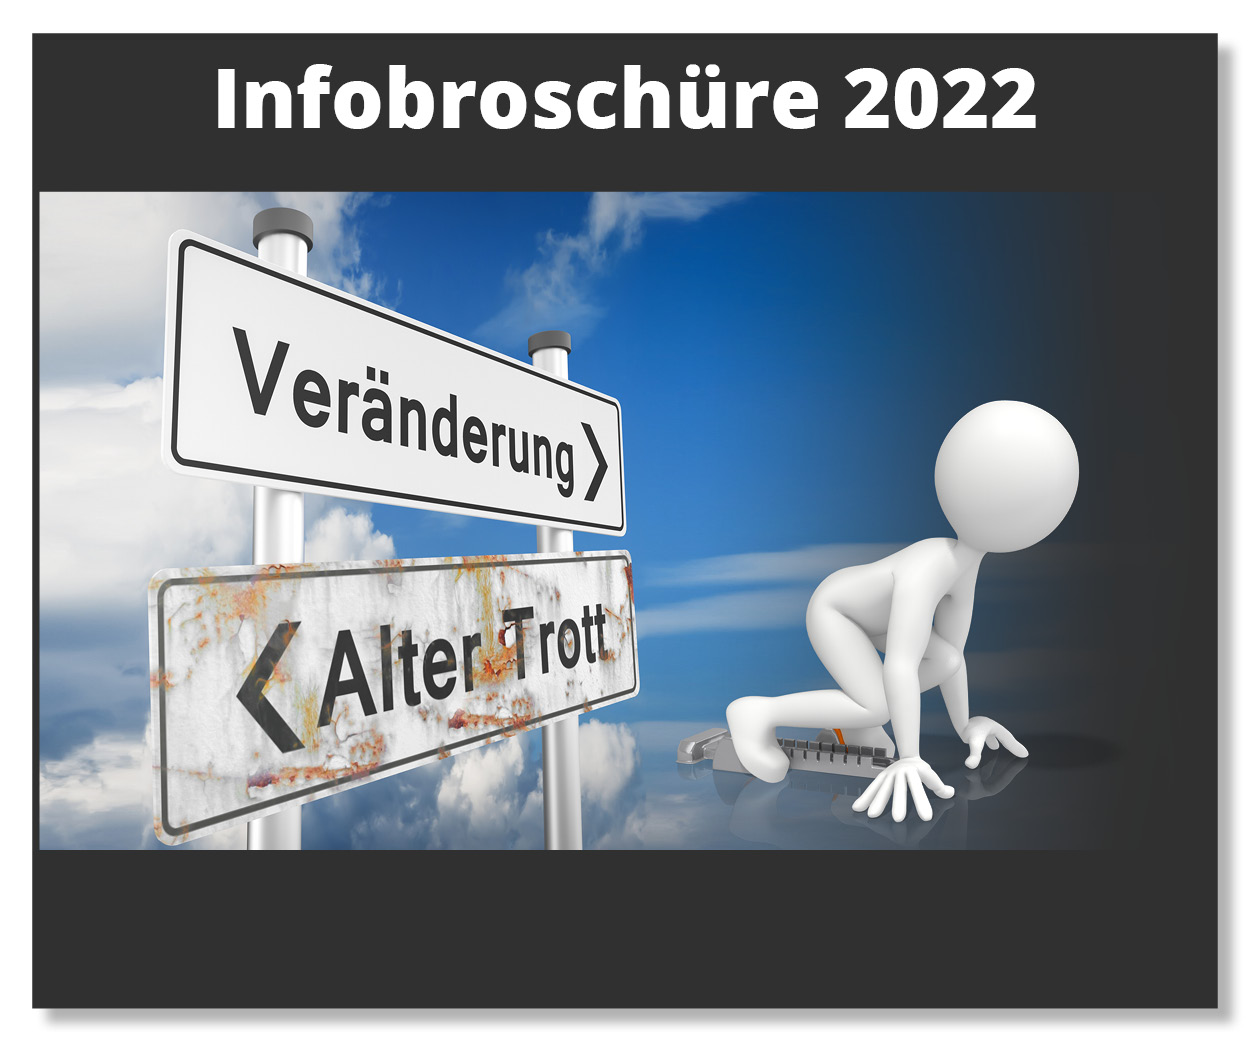 Infobroschüre zur BHKW 2022